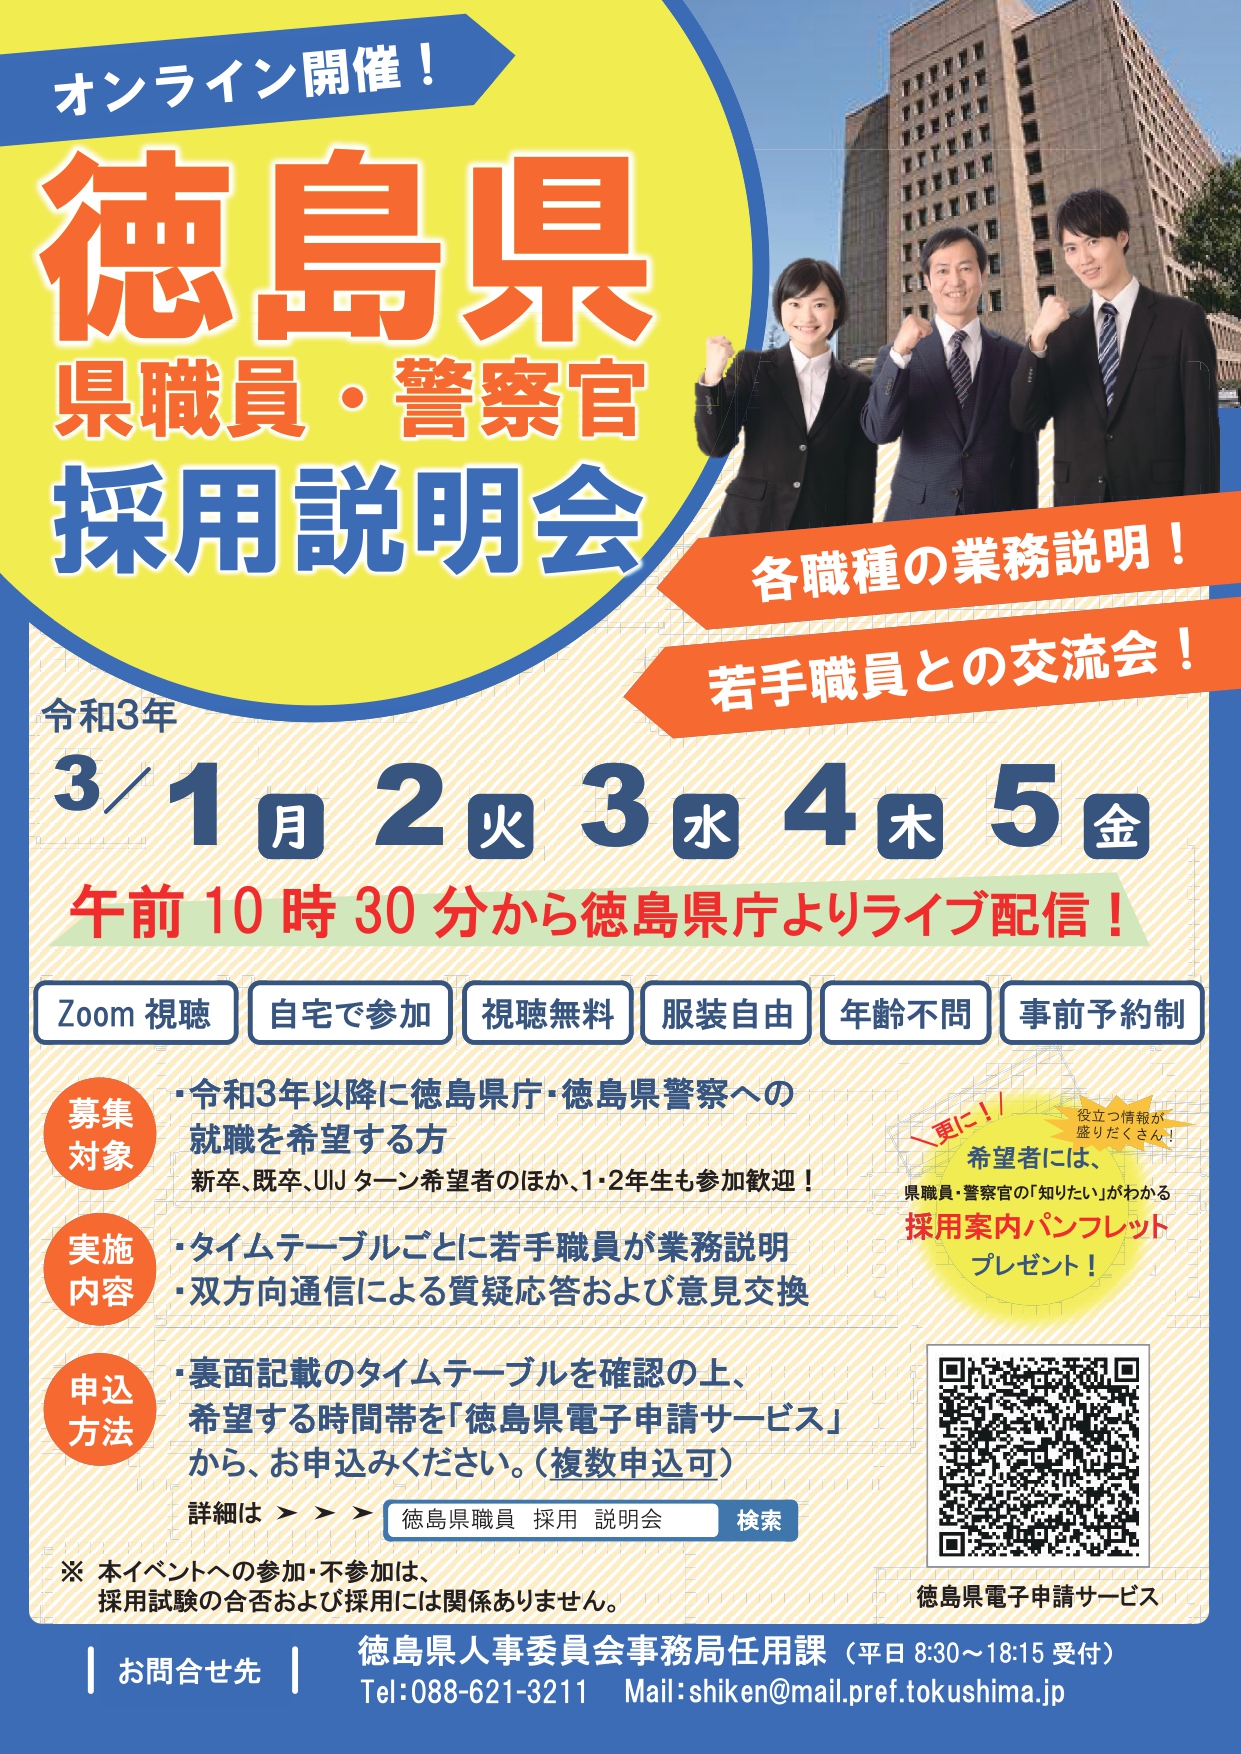 【オンライン】令和2年度「徳島県職員・警察官採用説明会」 | 地域のトピックス